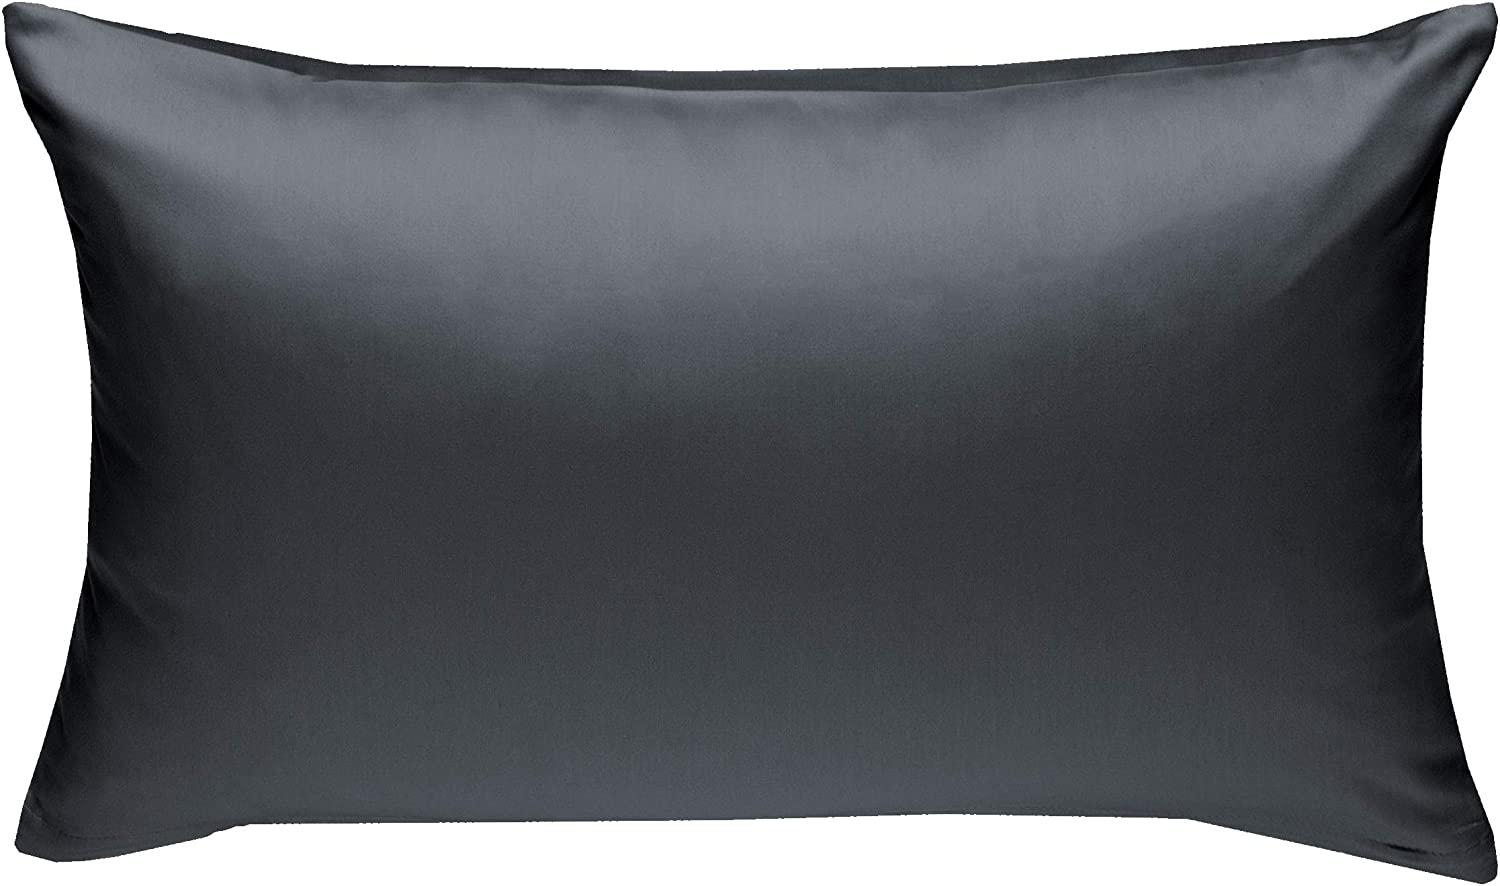 Bettwaesche-mit-Stil Mako-Satin / Baumwollsatin Bettwäsche uni / einfarbig dunkelgrau Kissenbezug 40x60 cm Bild 1